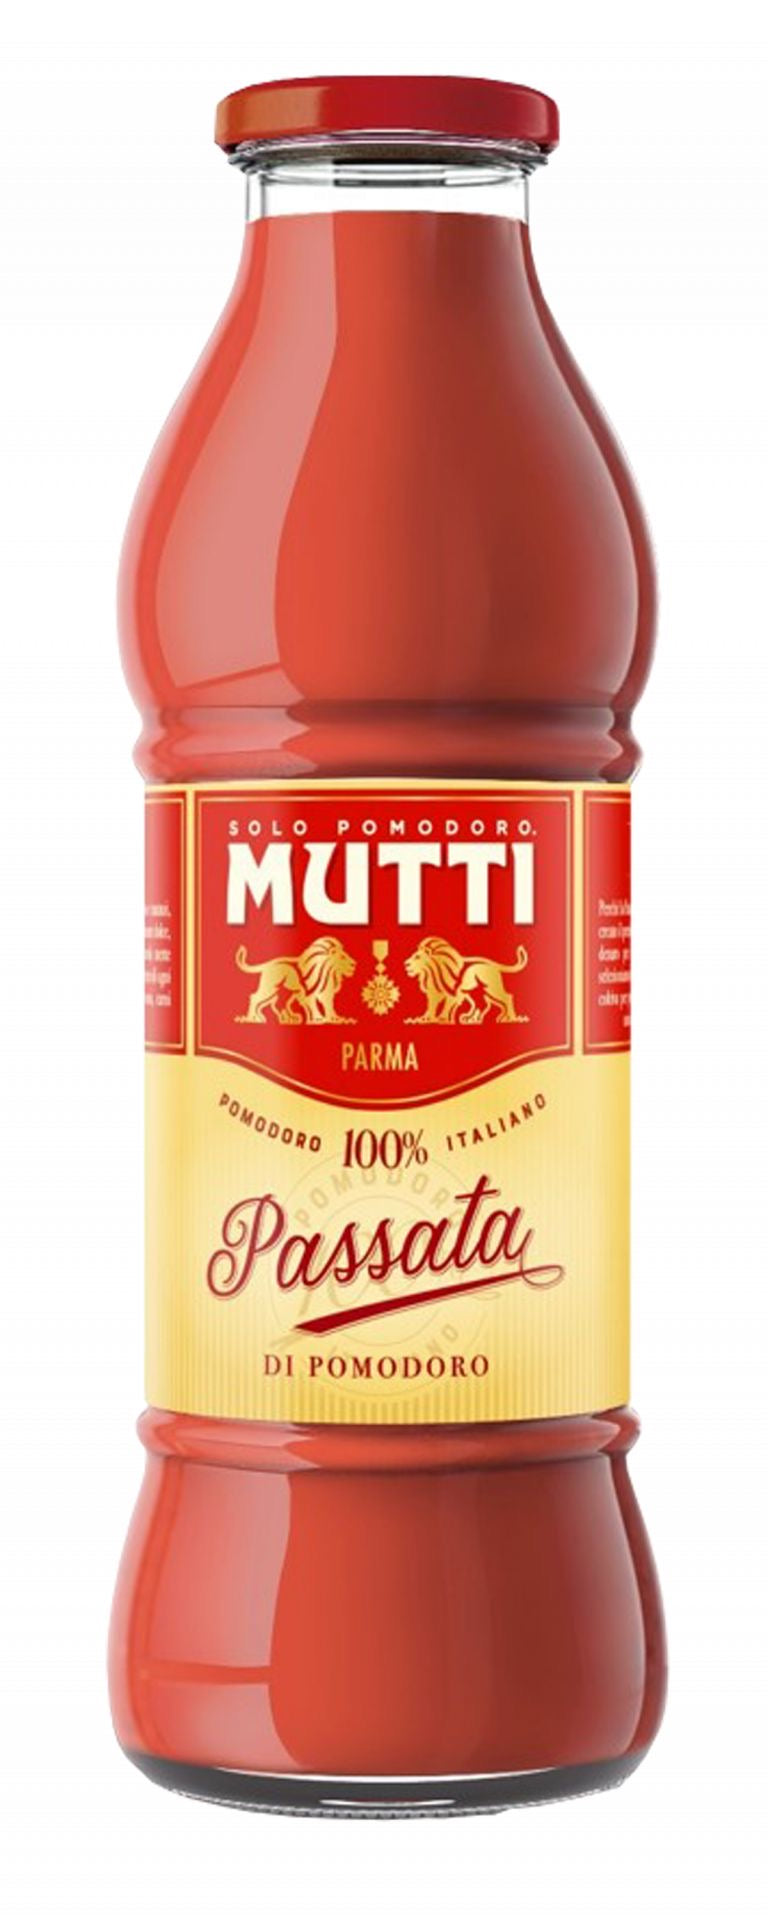 Mutti Passata Tomato Sauce 700g